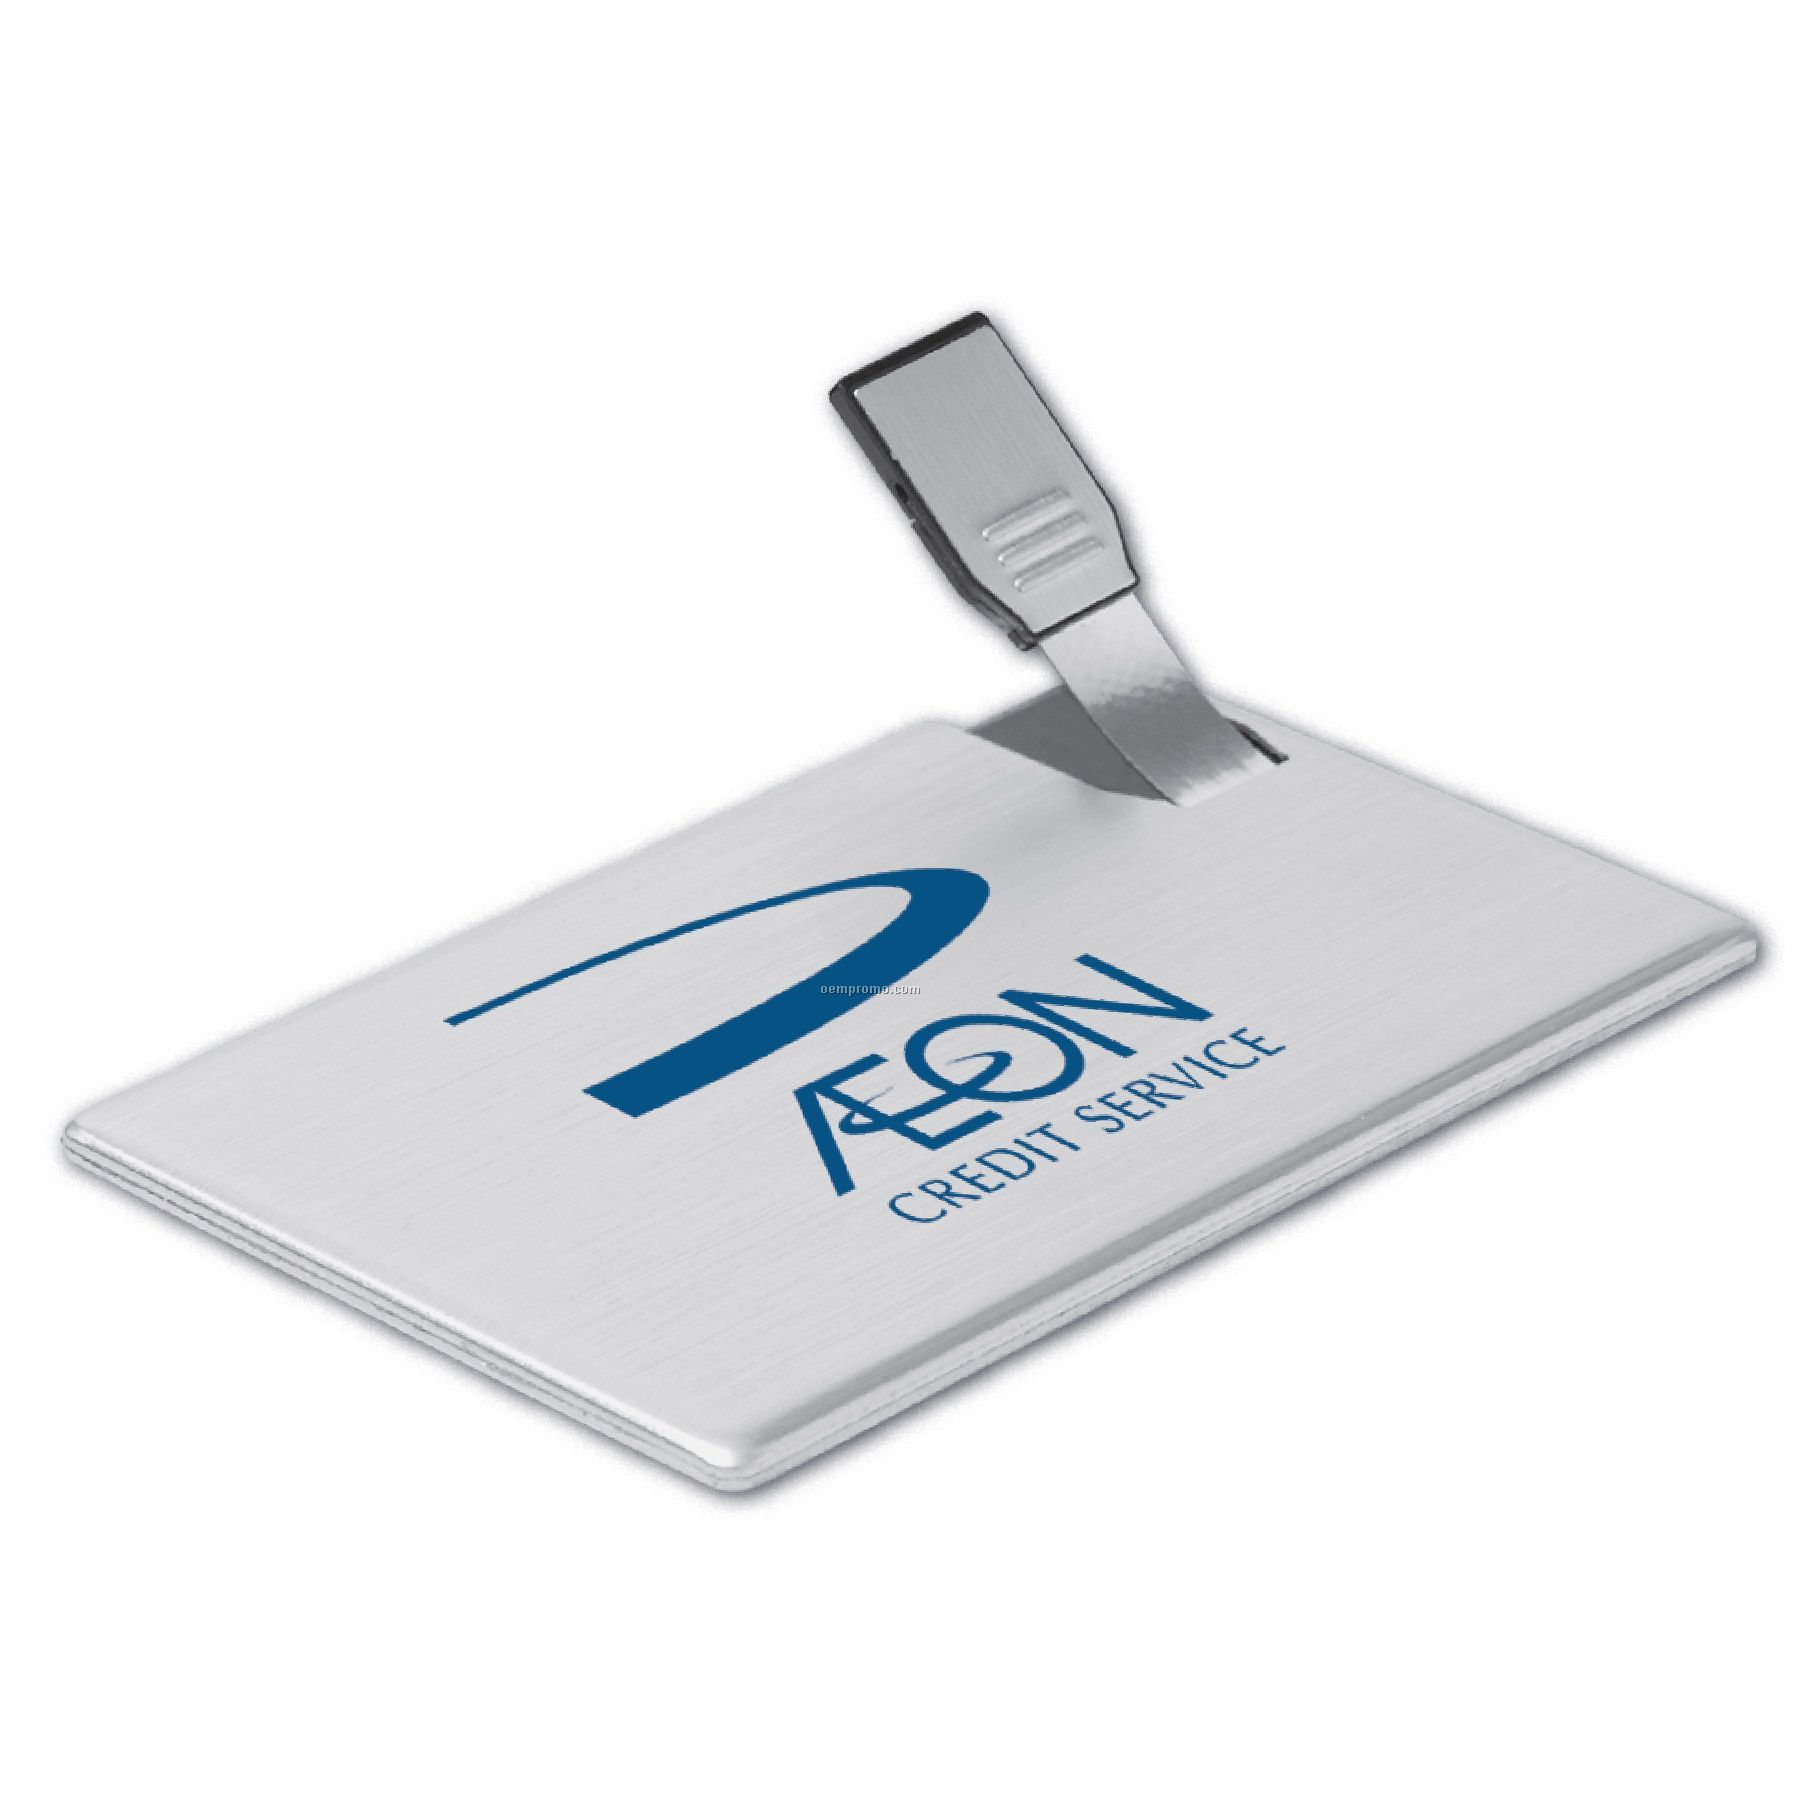 USB 2.0 Ultra Slim Card Drives Uc